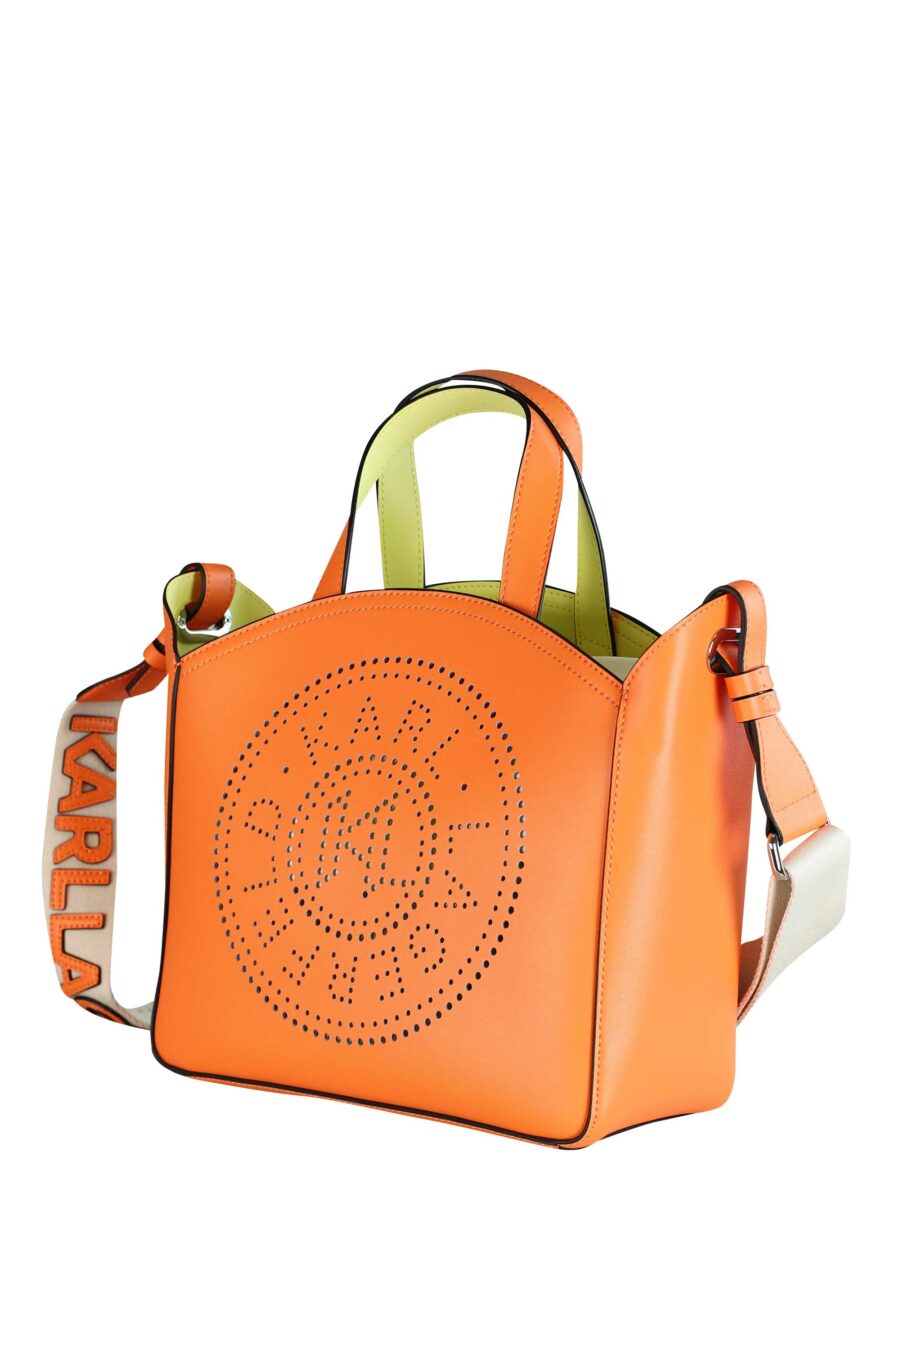 Tote bag naranja con logo "k/circle" monocromático - 8720744234692 2